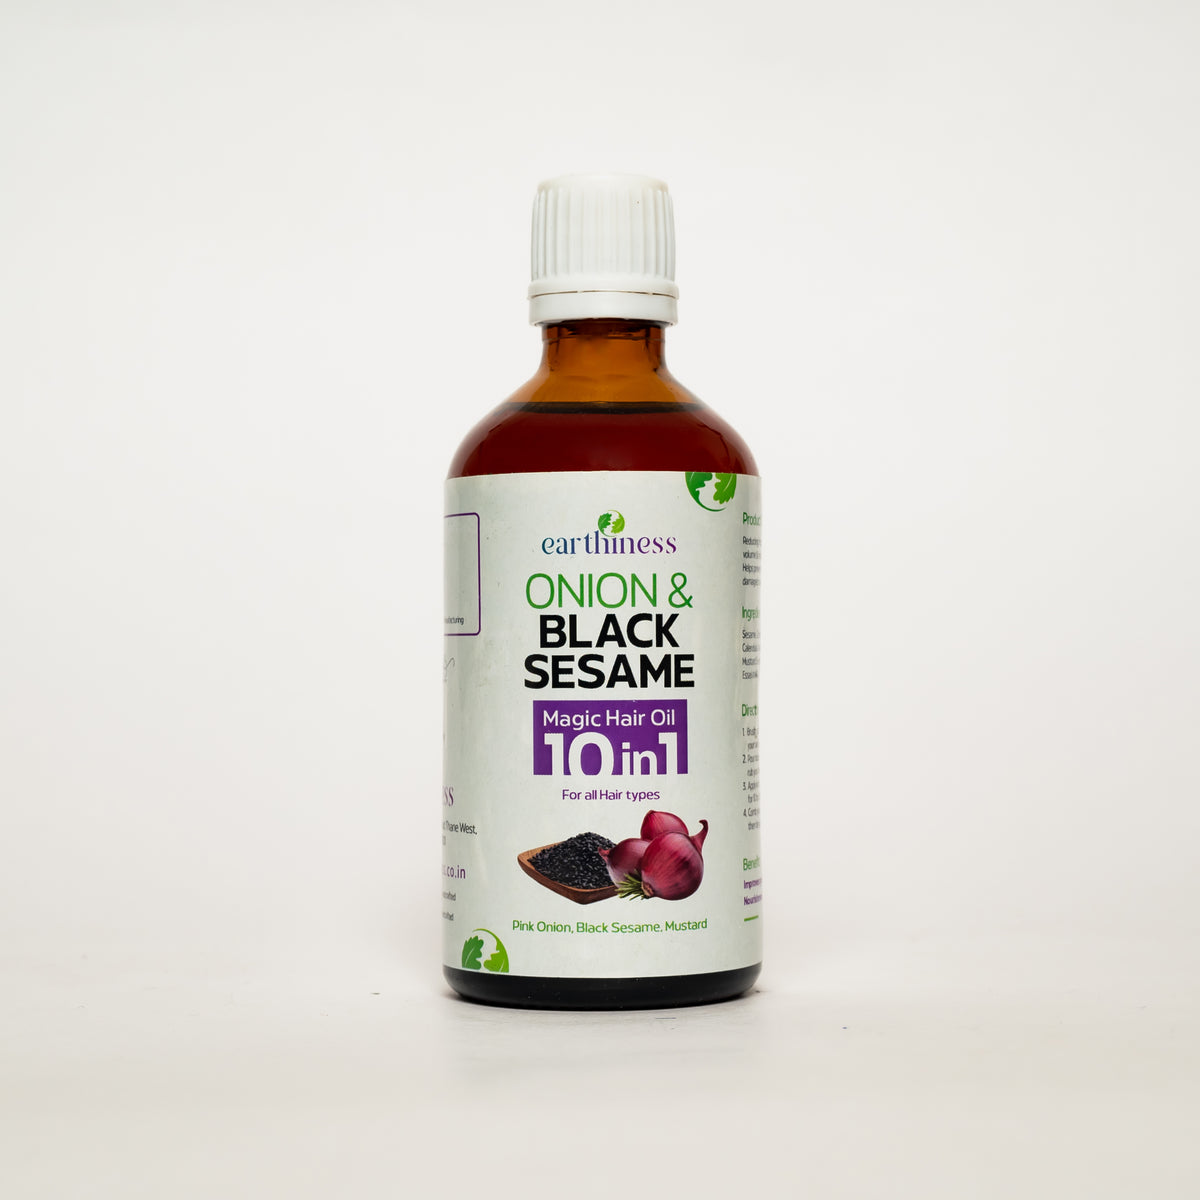 Onion & Black Sesame 10-in 1 Magic Hair Oil